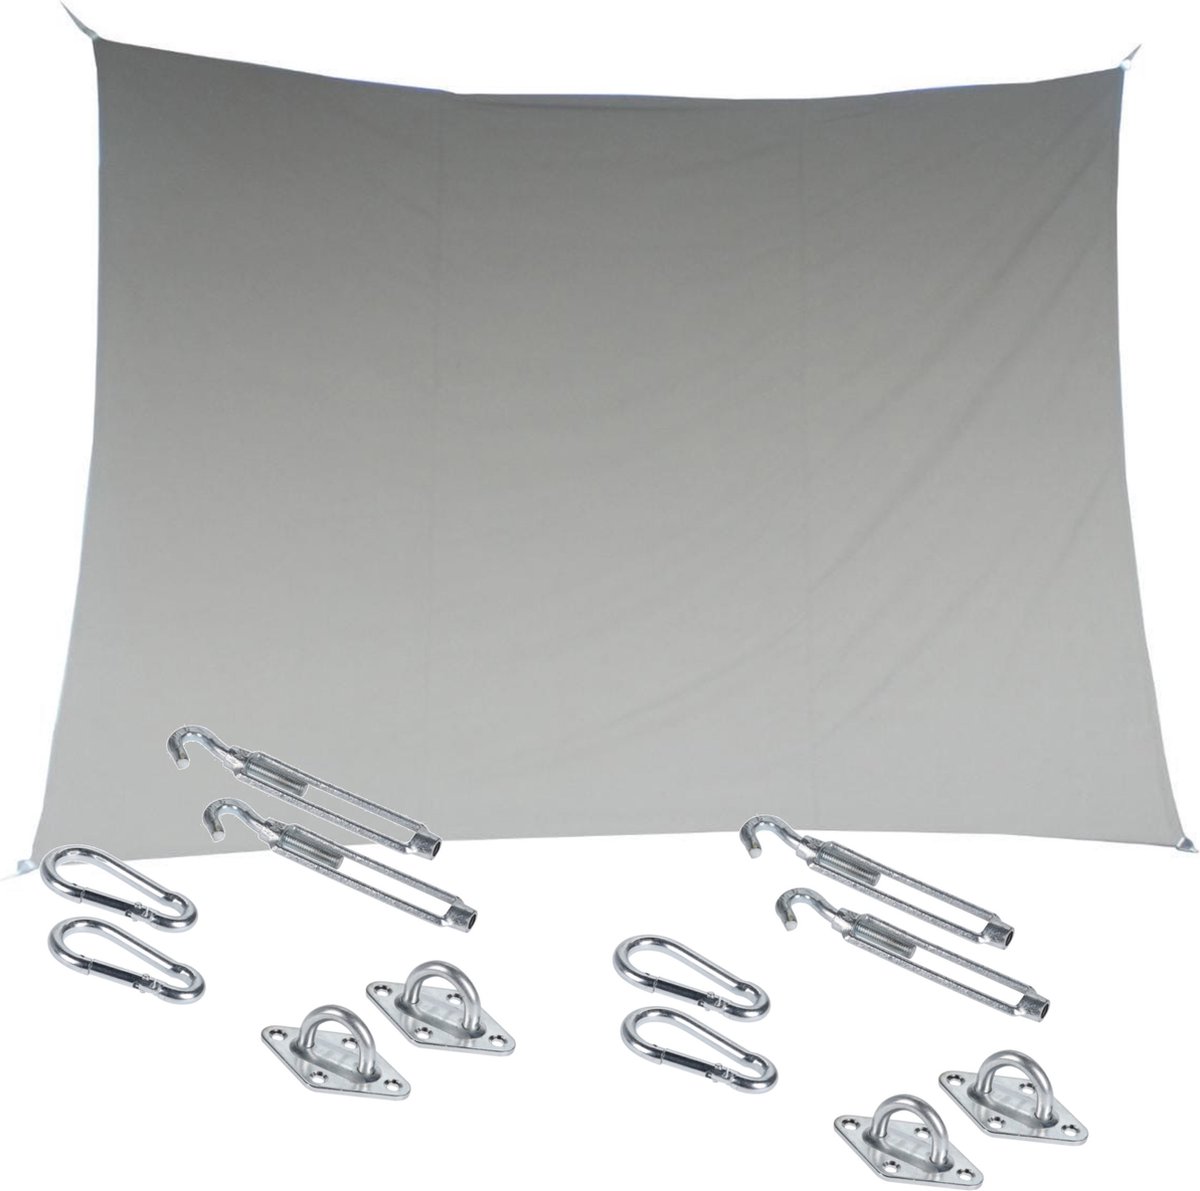 Premium kwaliteit schaduwdoek/zonnescherm Shae rechthoekig beige 3 x 4 meter - inclusief bevestiging haken set